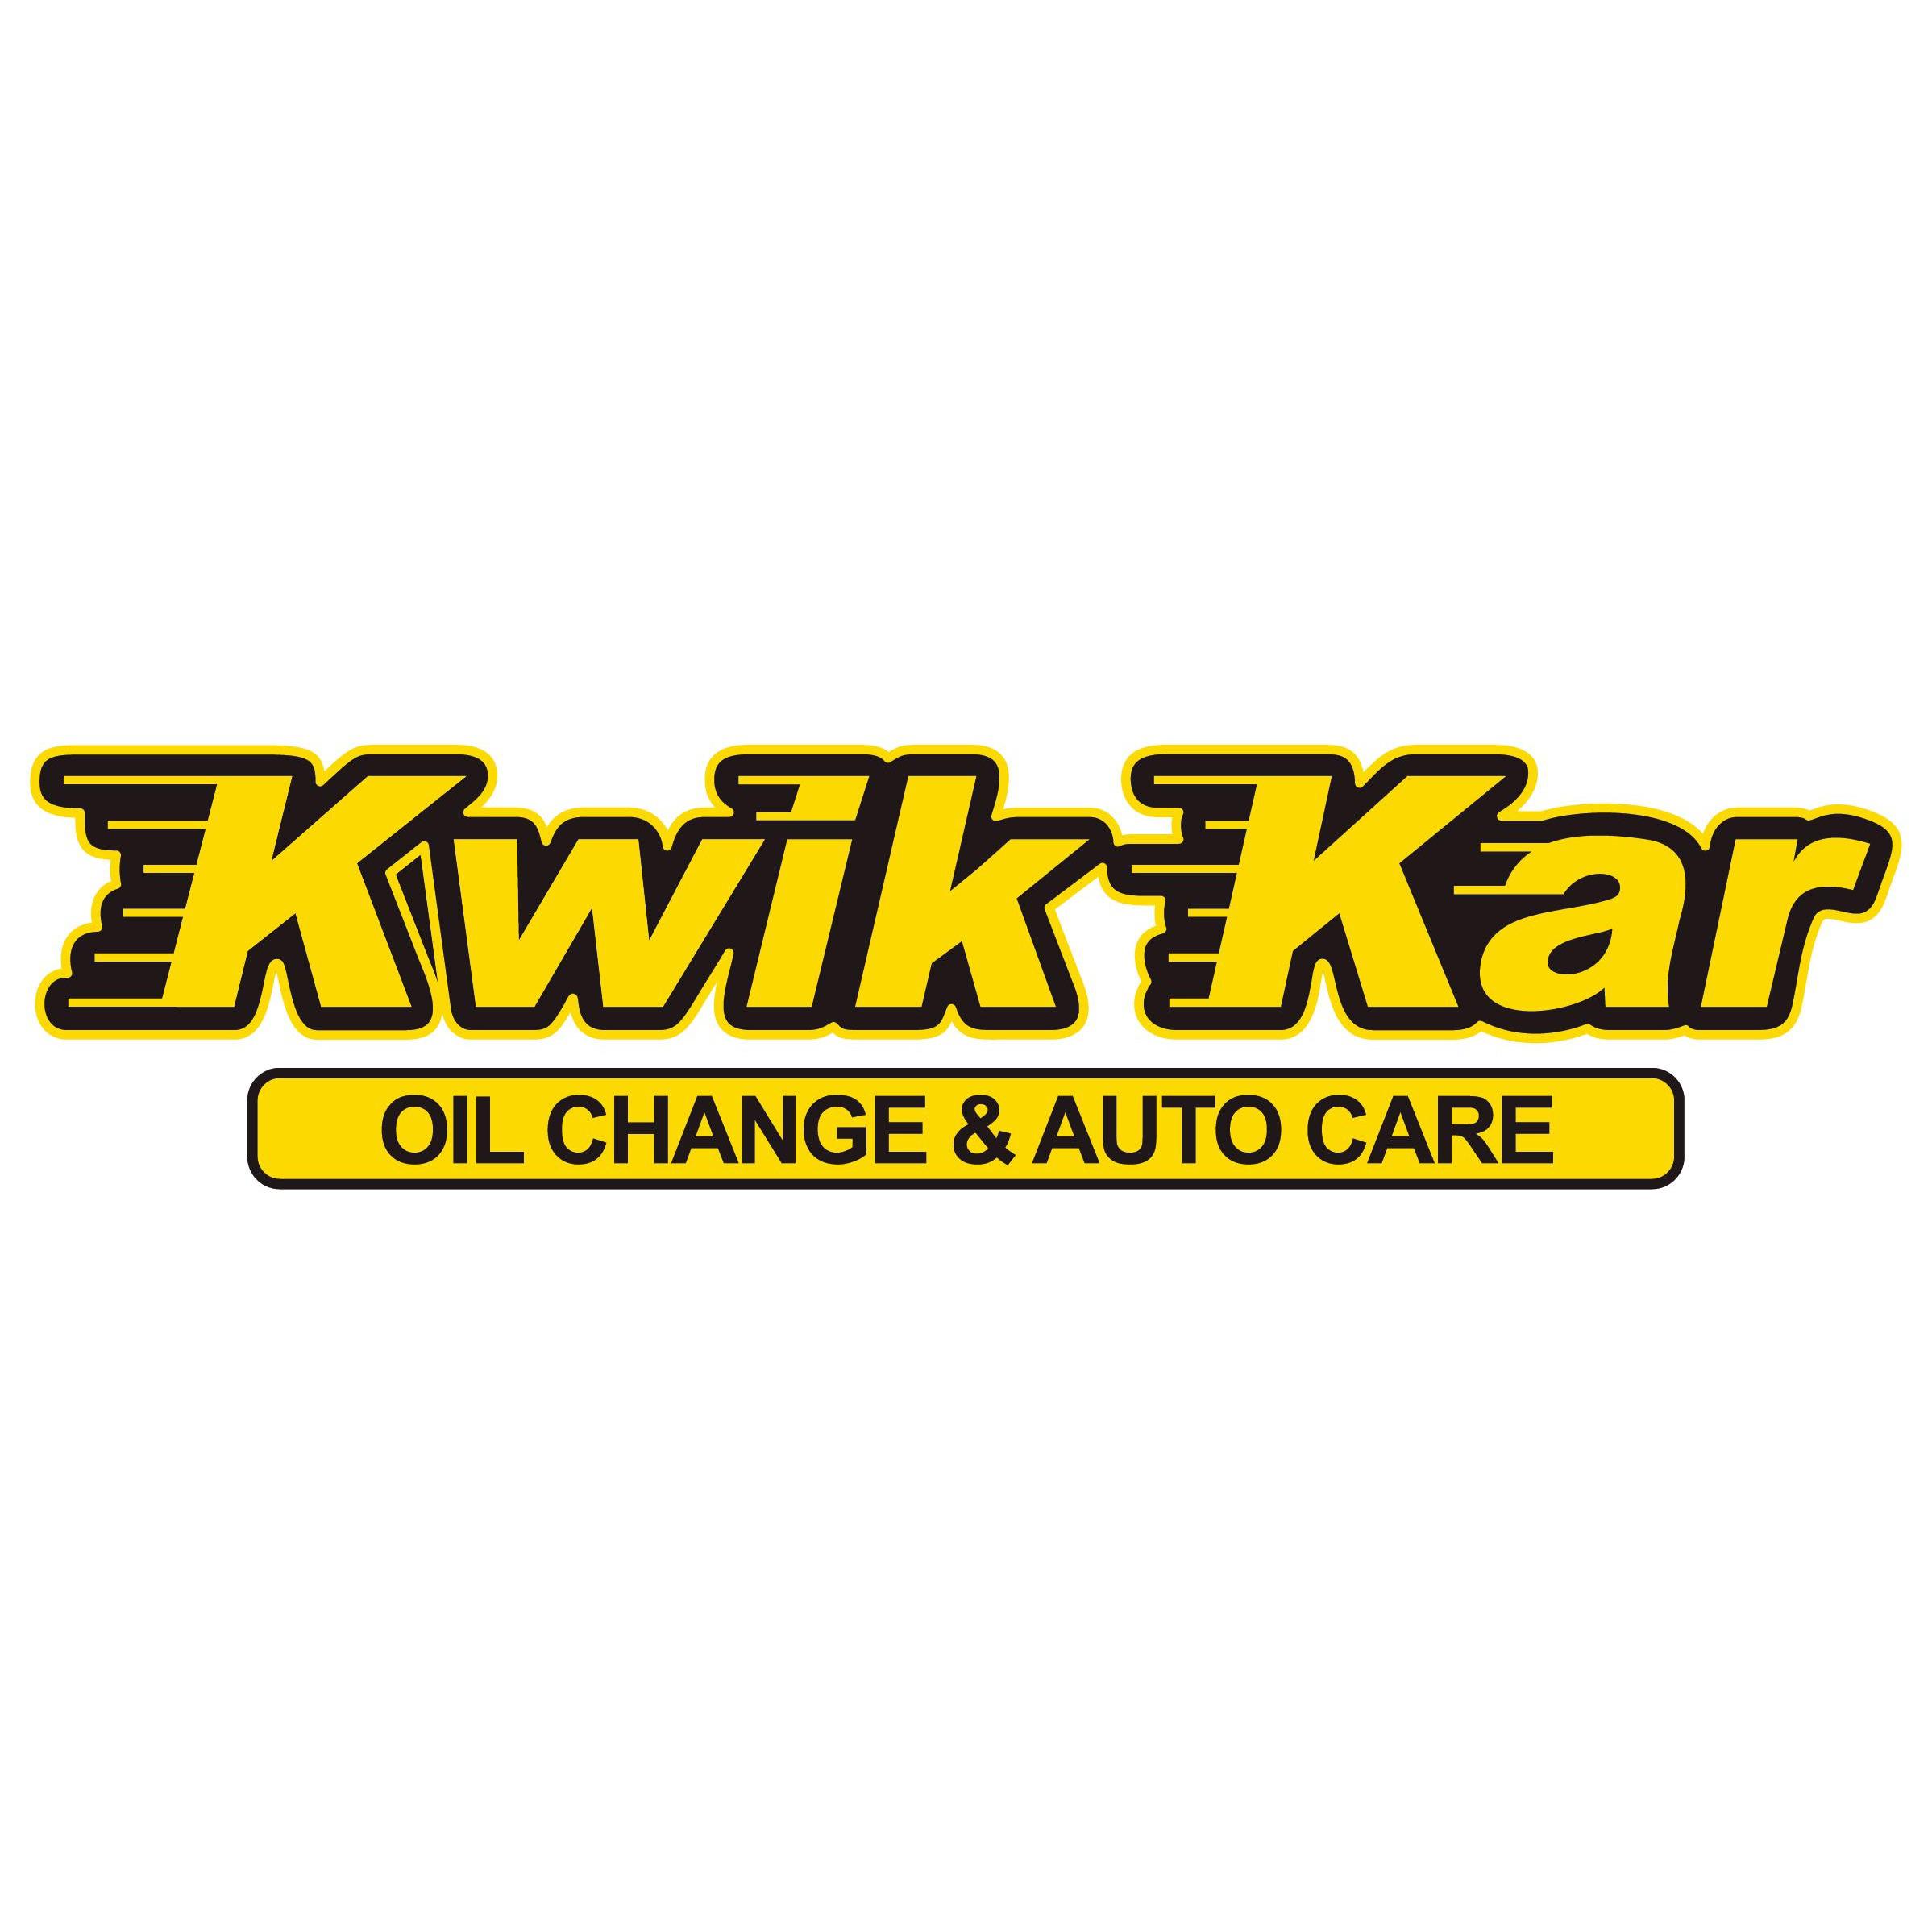 Kwik Kar Oil Change & Auto Care - Allen, TX 75013 - (972)396-1022 | ShowMeLocal.com